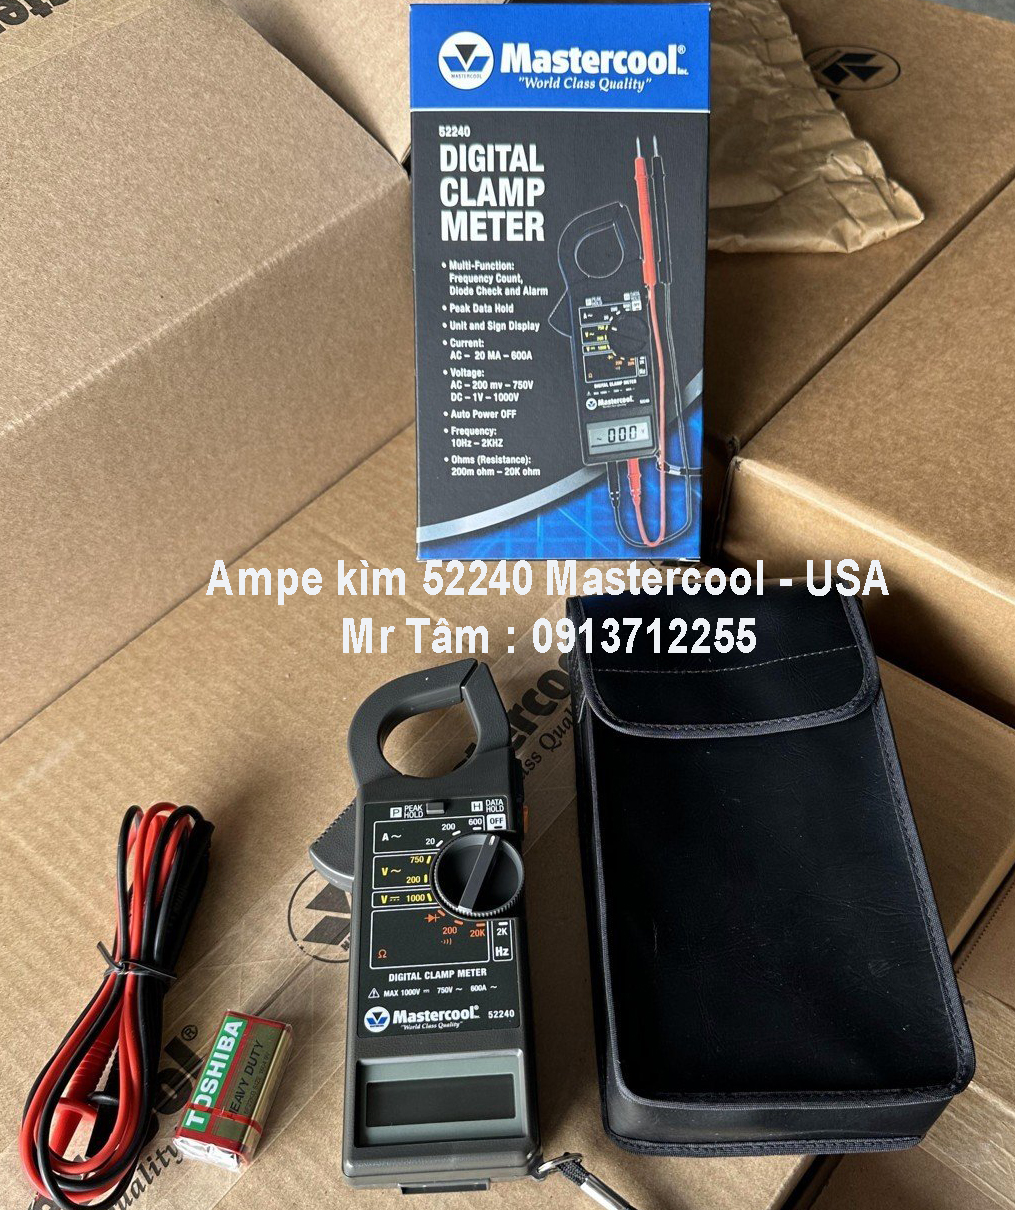 ampe-kim-52240-mastercool-usa